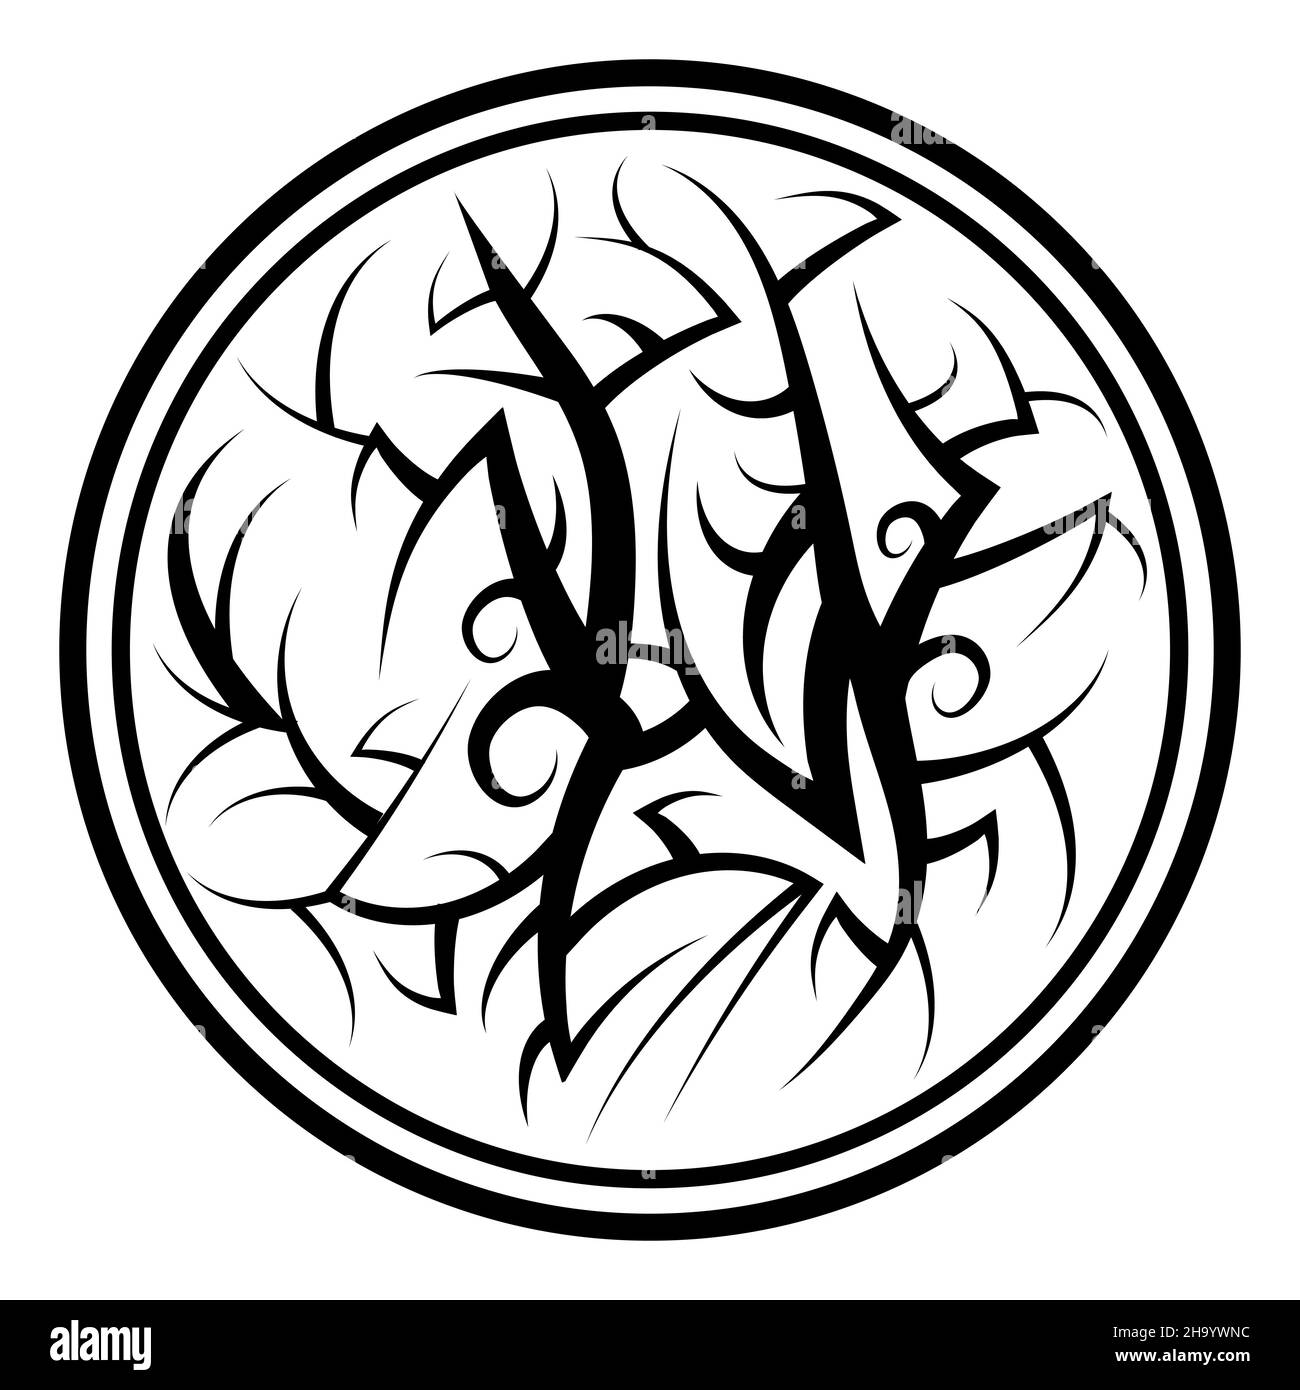 Motif de tatouage polynésien isolé sur fond blanc Banque D'Images